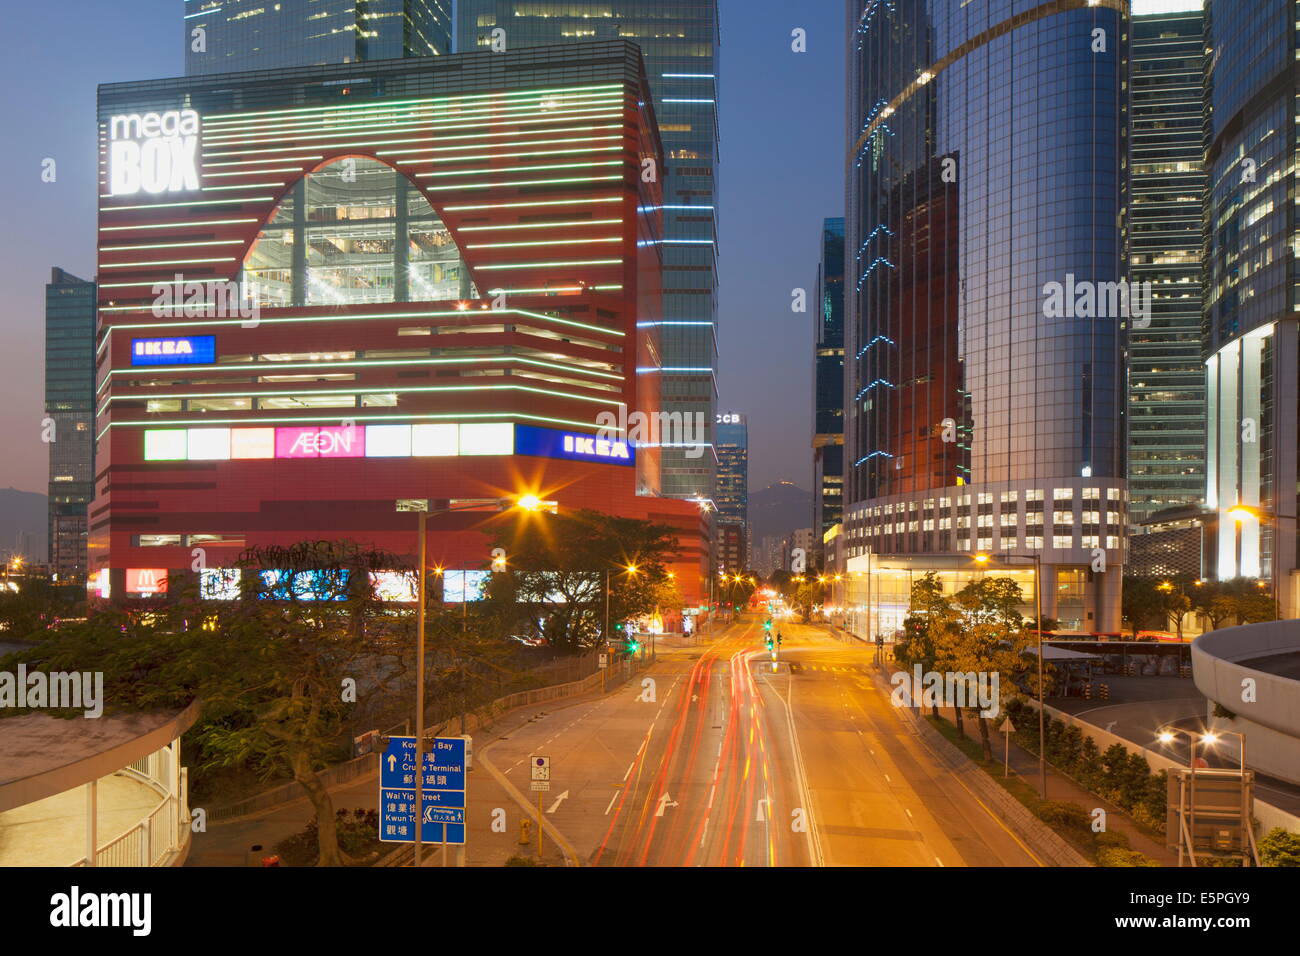 Megabox shopping mall and Entreprise Square Three at dusk, Kowloon Bay, Kowloon, Hong Kong, China, Asia Stock Photo